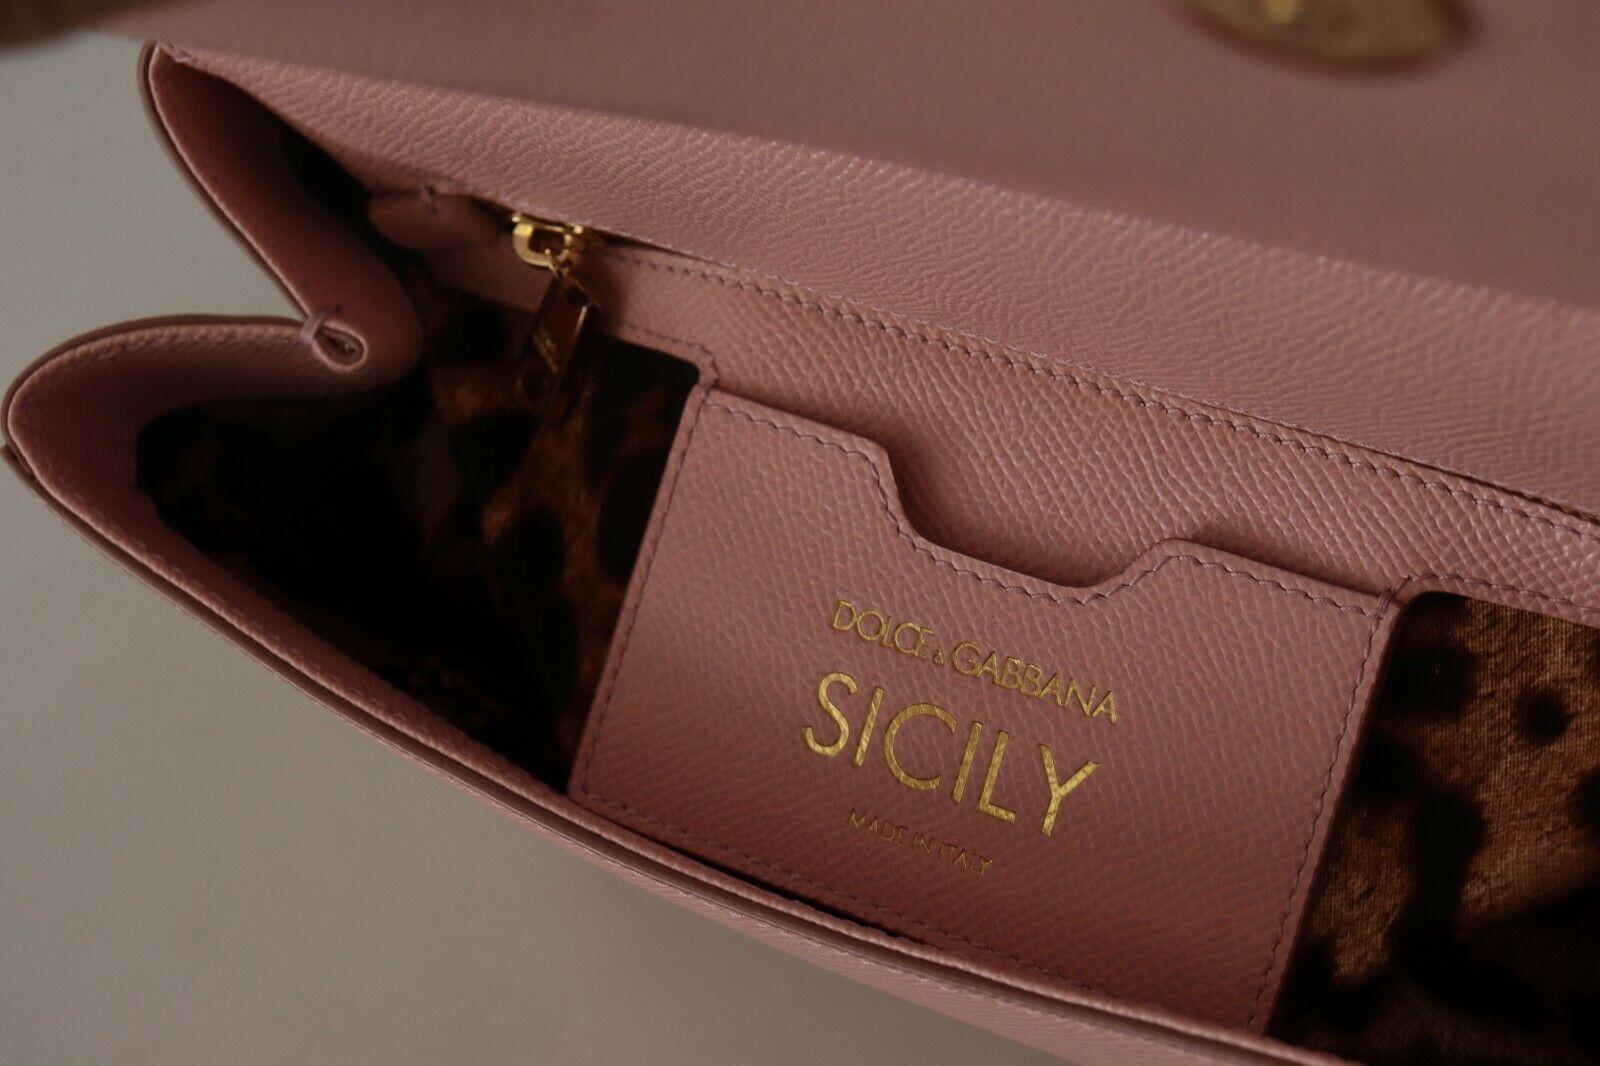 Dolce & Gabbana Pink Leather Sicily Top Handle Handbag Shoulder Bag With DG Logo 3